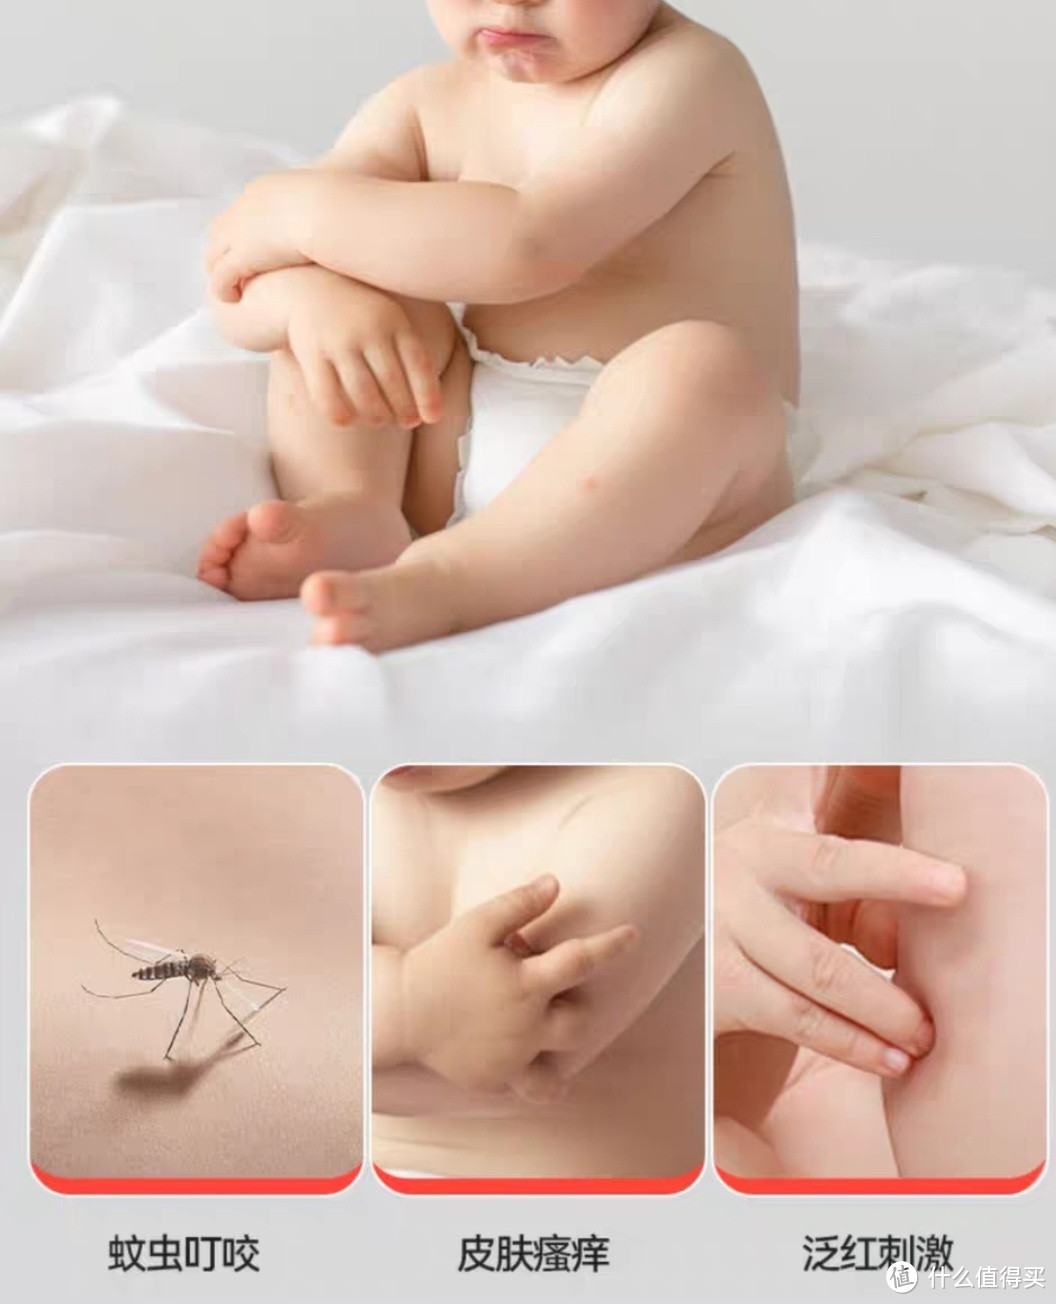 宝宝被蚊虫叮咬，快给他试试这款好孩子紫草膏吧，解决蚊虫叮咬，舒缓肌肤不刺激。